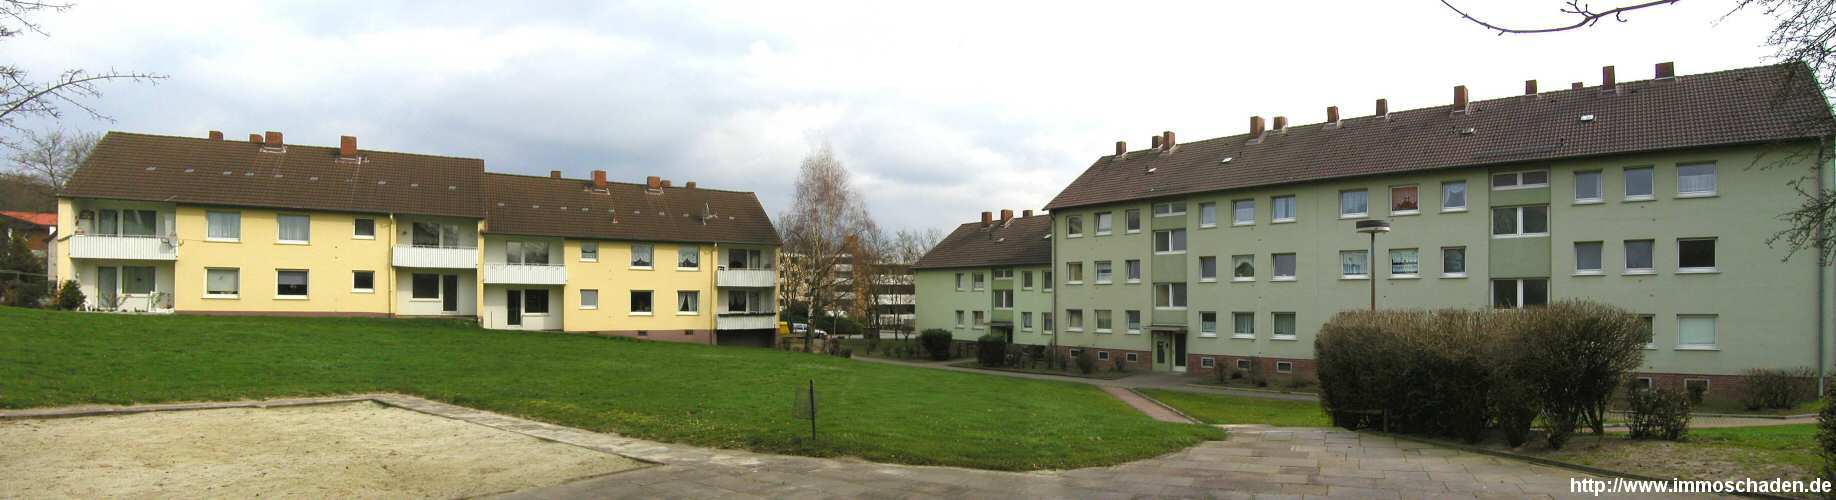 Bild 4: Melle, Innenhof, Carl-Bösch-Str. 3, 1, Waldstr. 41, 39, 37